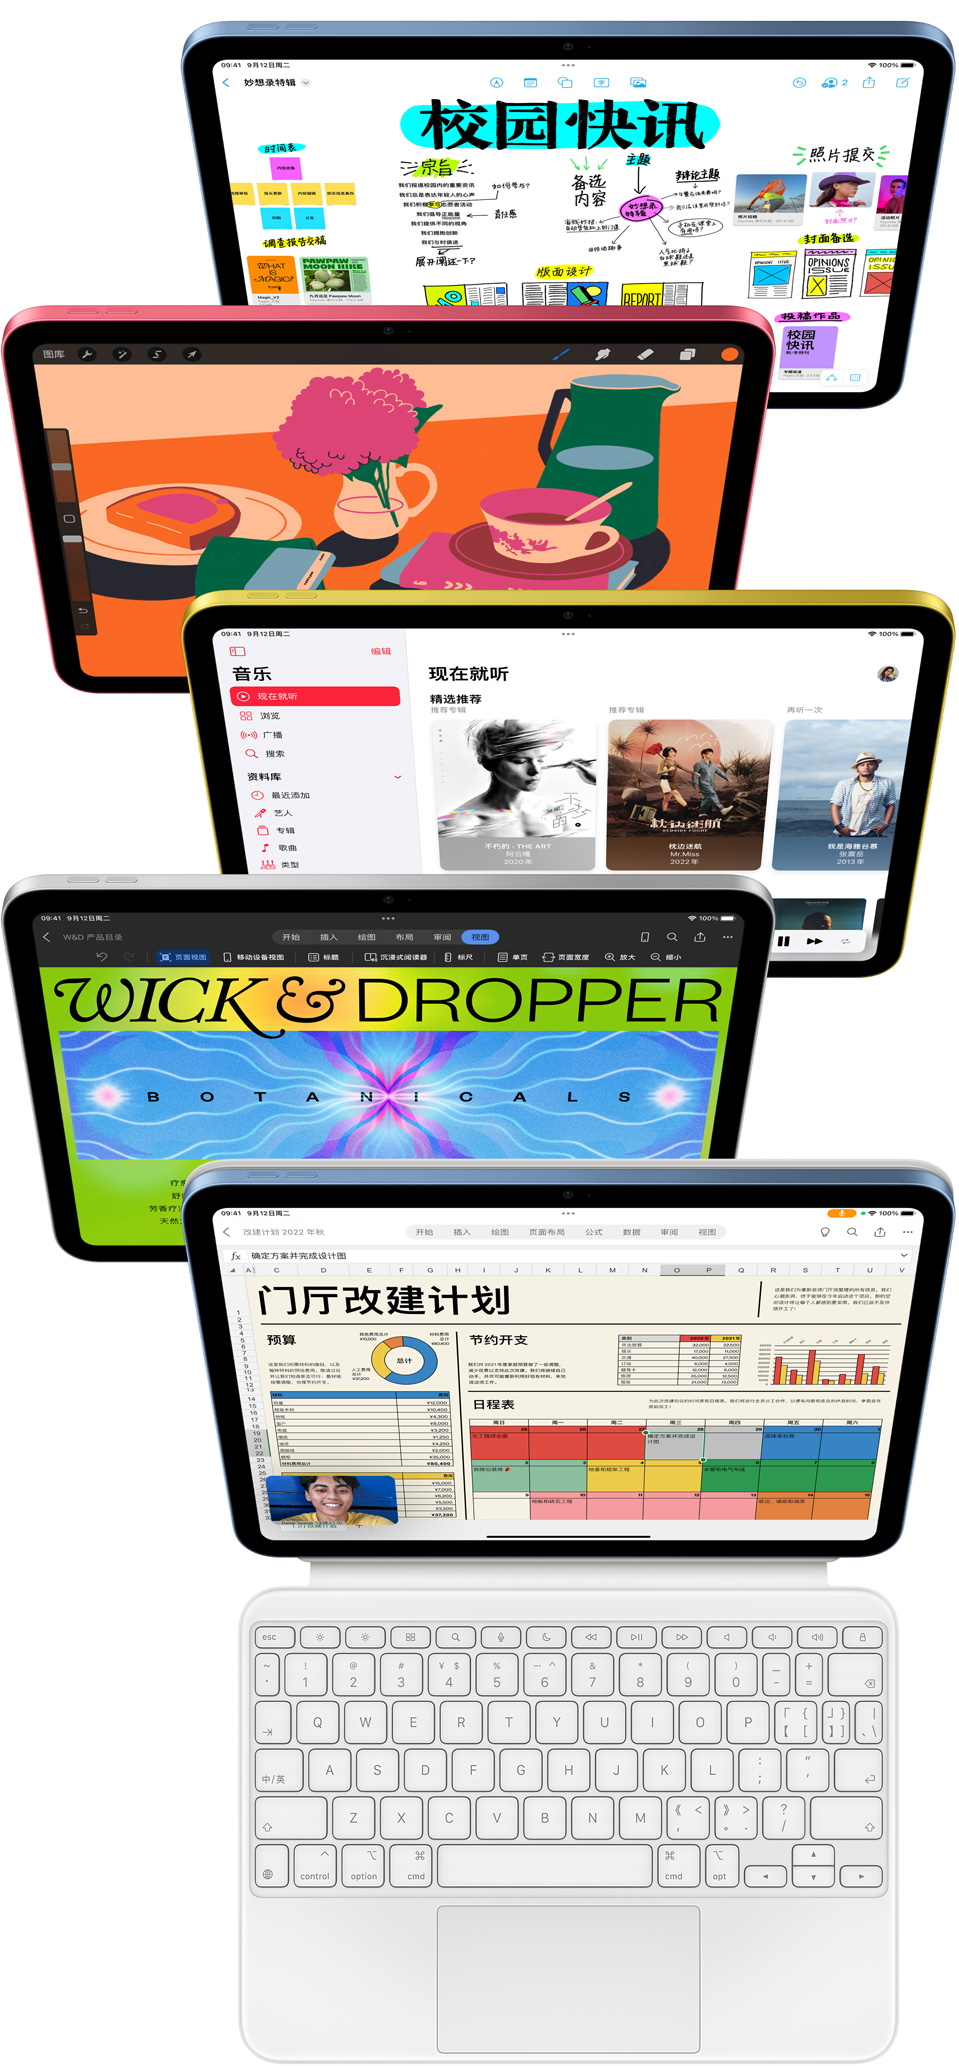 一组 iPad 的屏幕上各自显示着多款 Apple 自带 app 和 App Store 的 app。